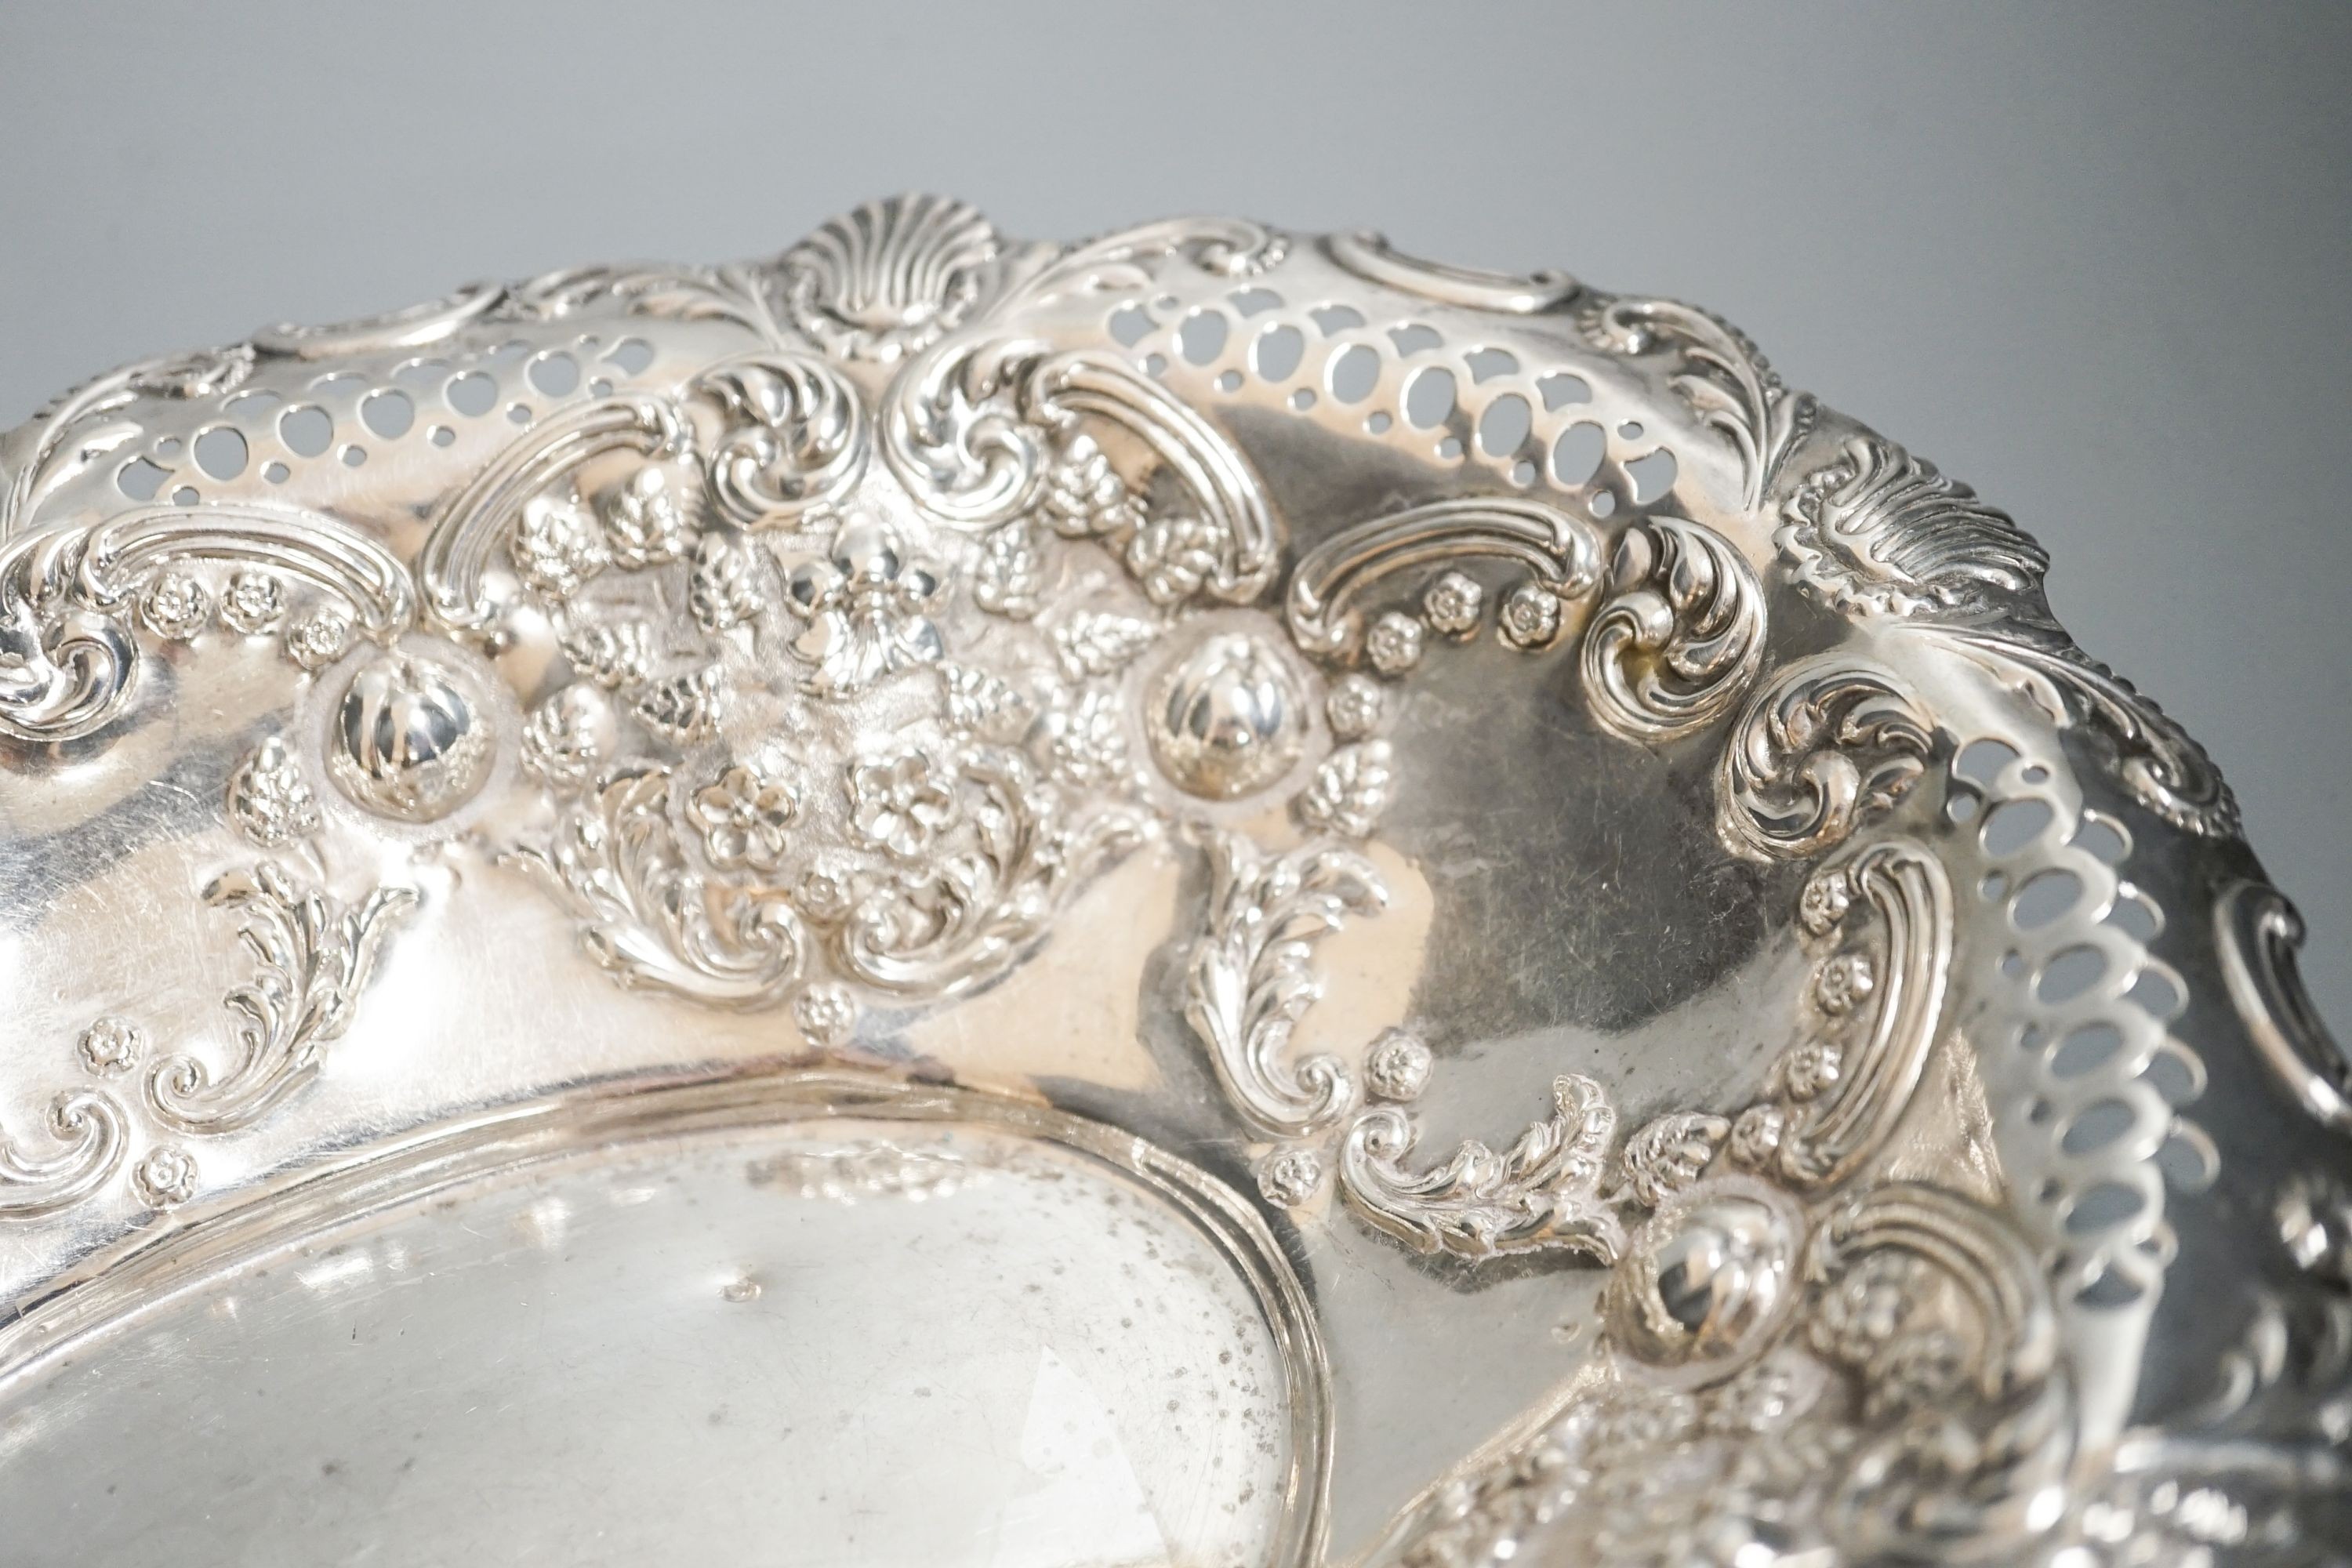 An Edwardian pierced silver oval dish, Birmingham, 1904, 30.8cm, 10.5oz.